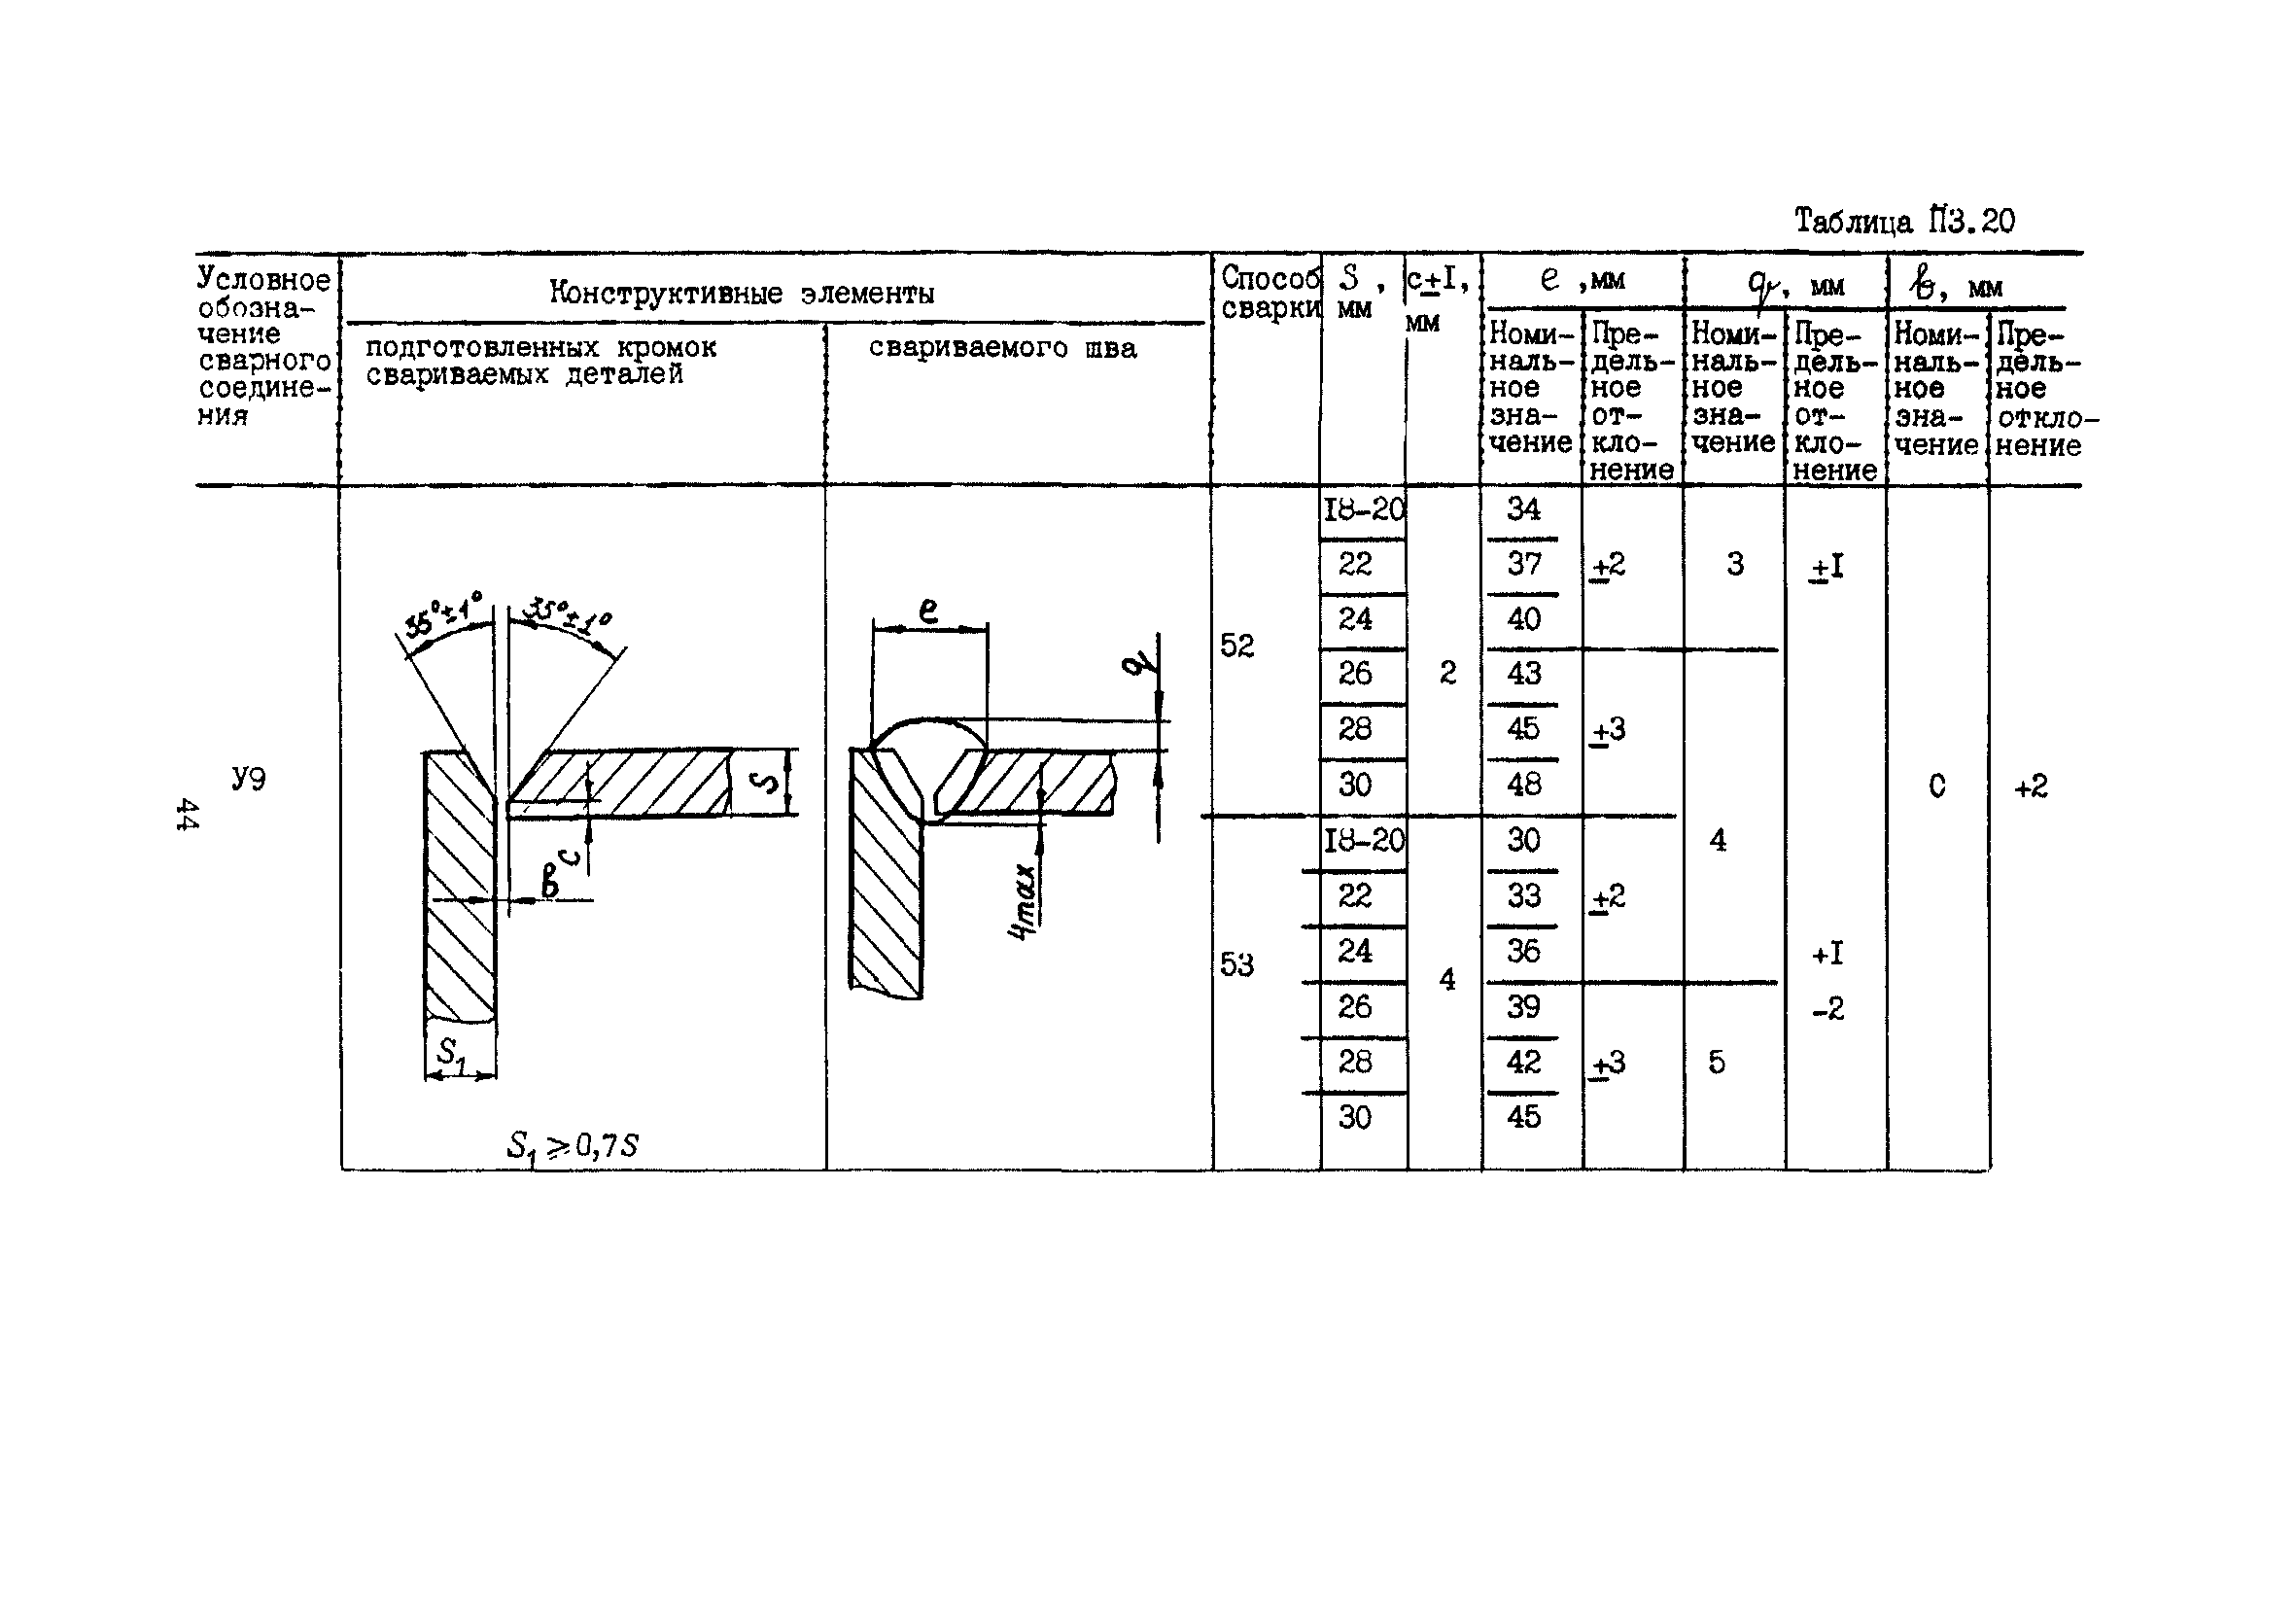 ПНАЭ Г-7-022-90